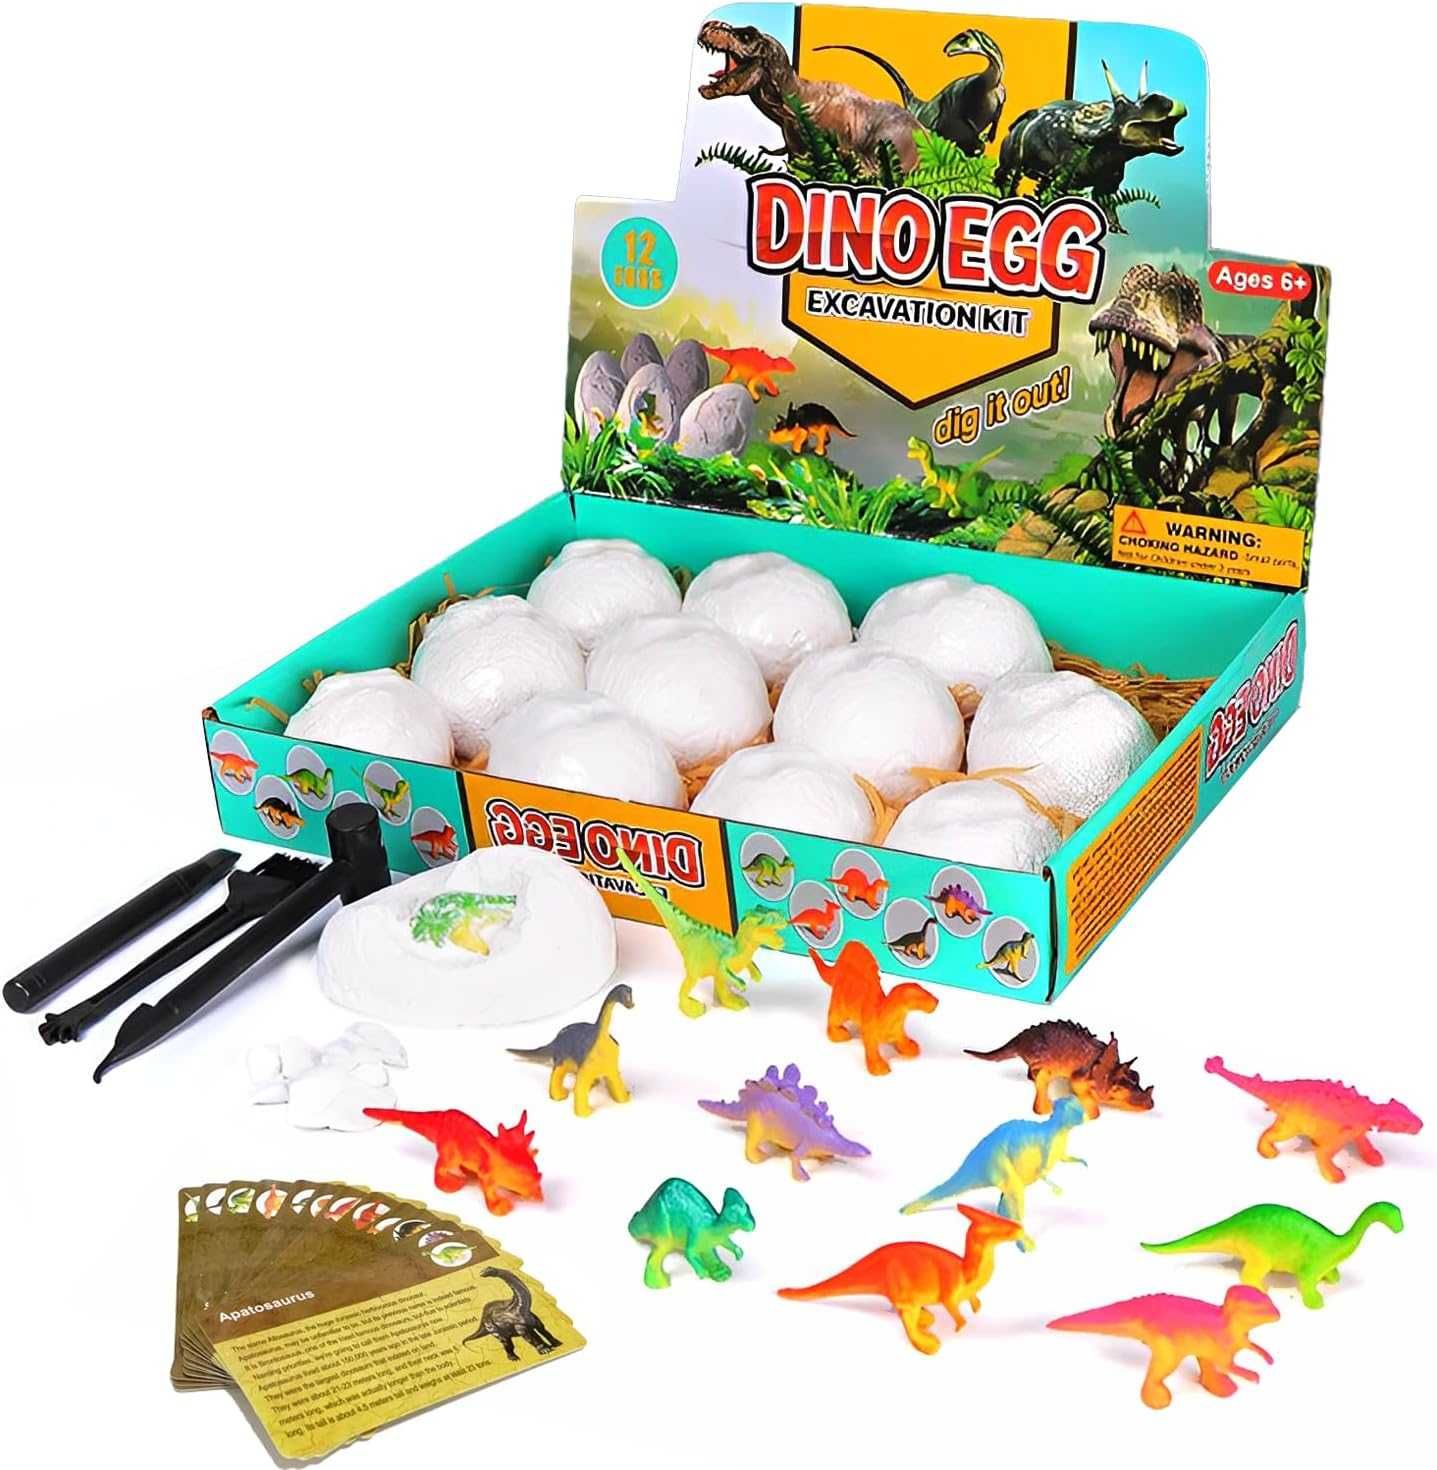 Ovos de dinossauro kit de escavação arqueologia 12 dinossauros - NOVO